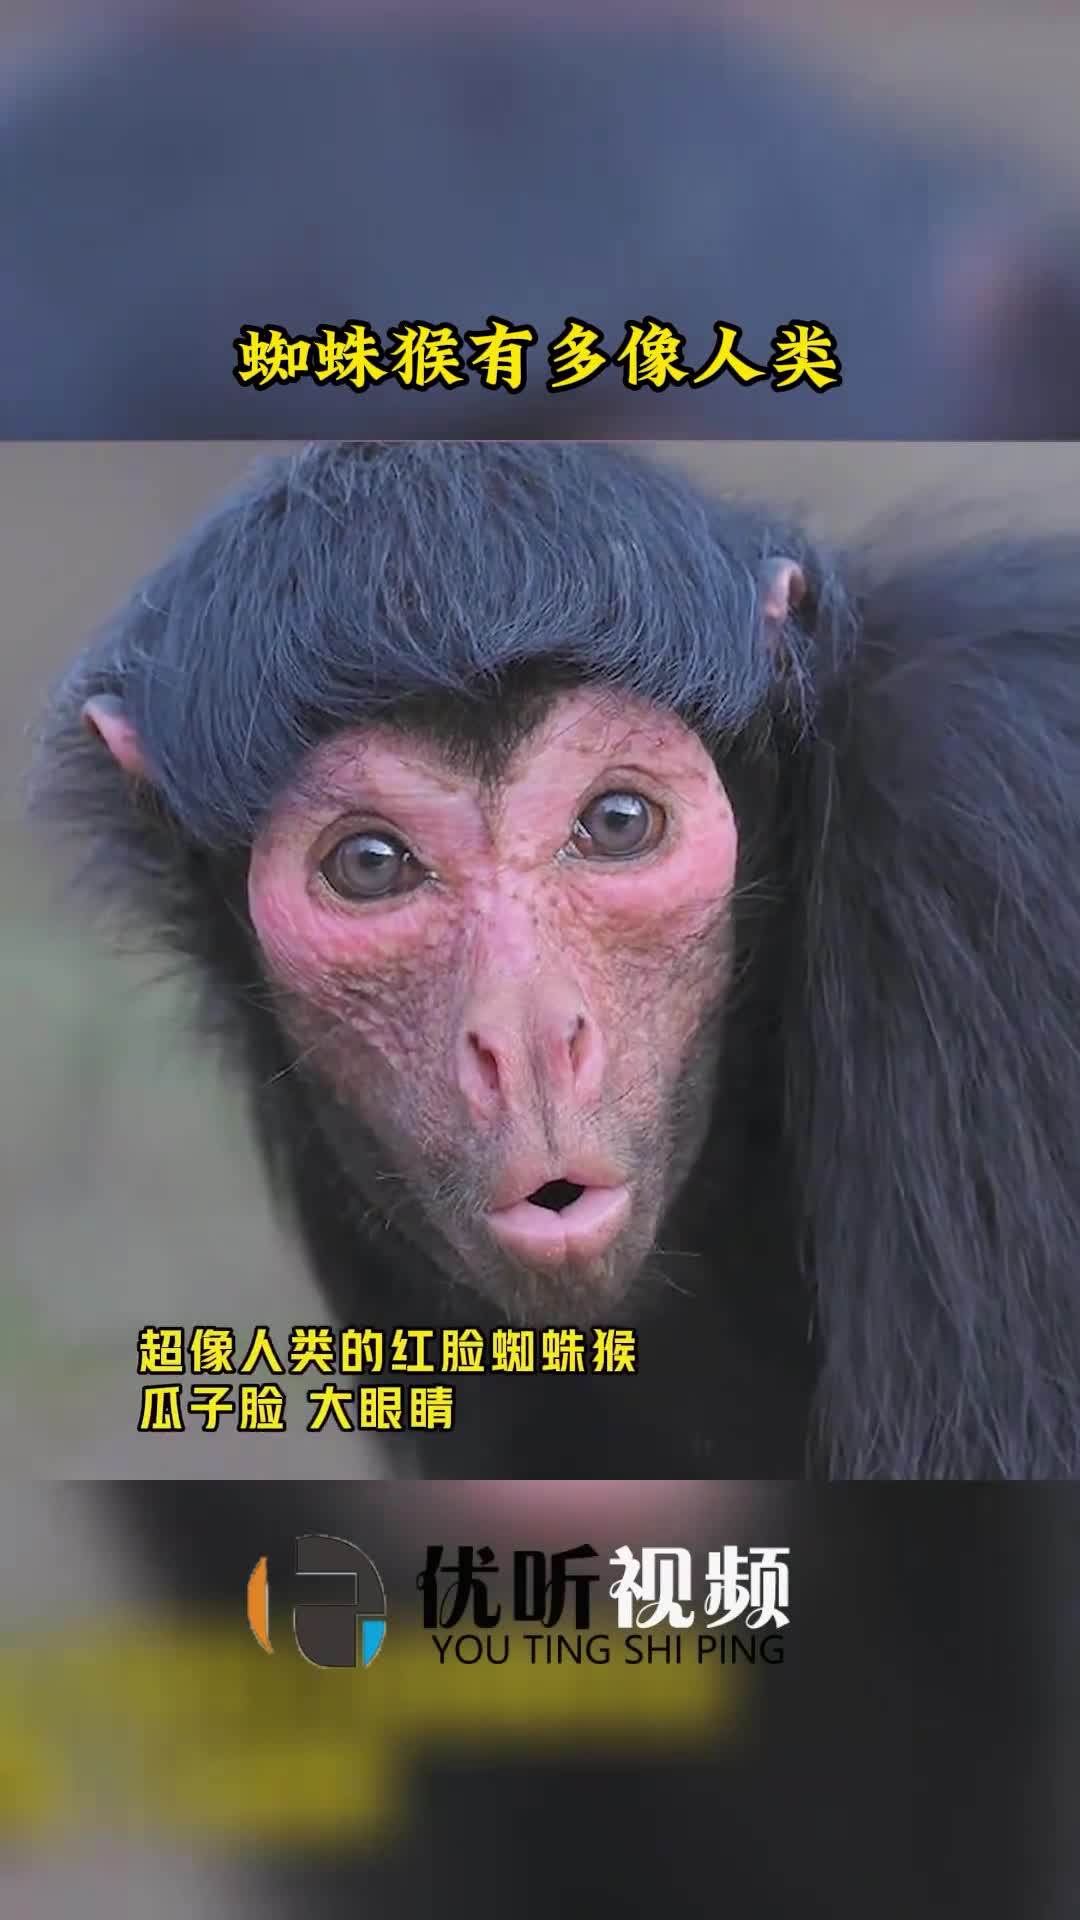 神奇动物在这里这种猴子长得好像人而且还是瓜子脸大眼睛奇闻趣事